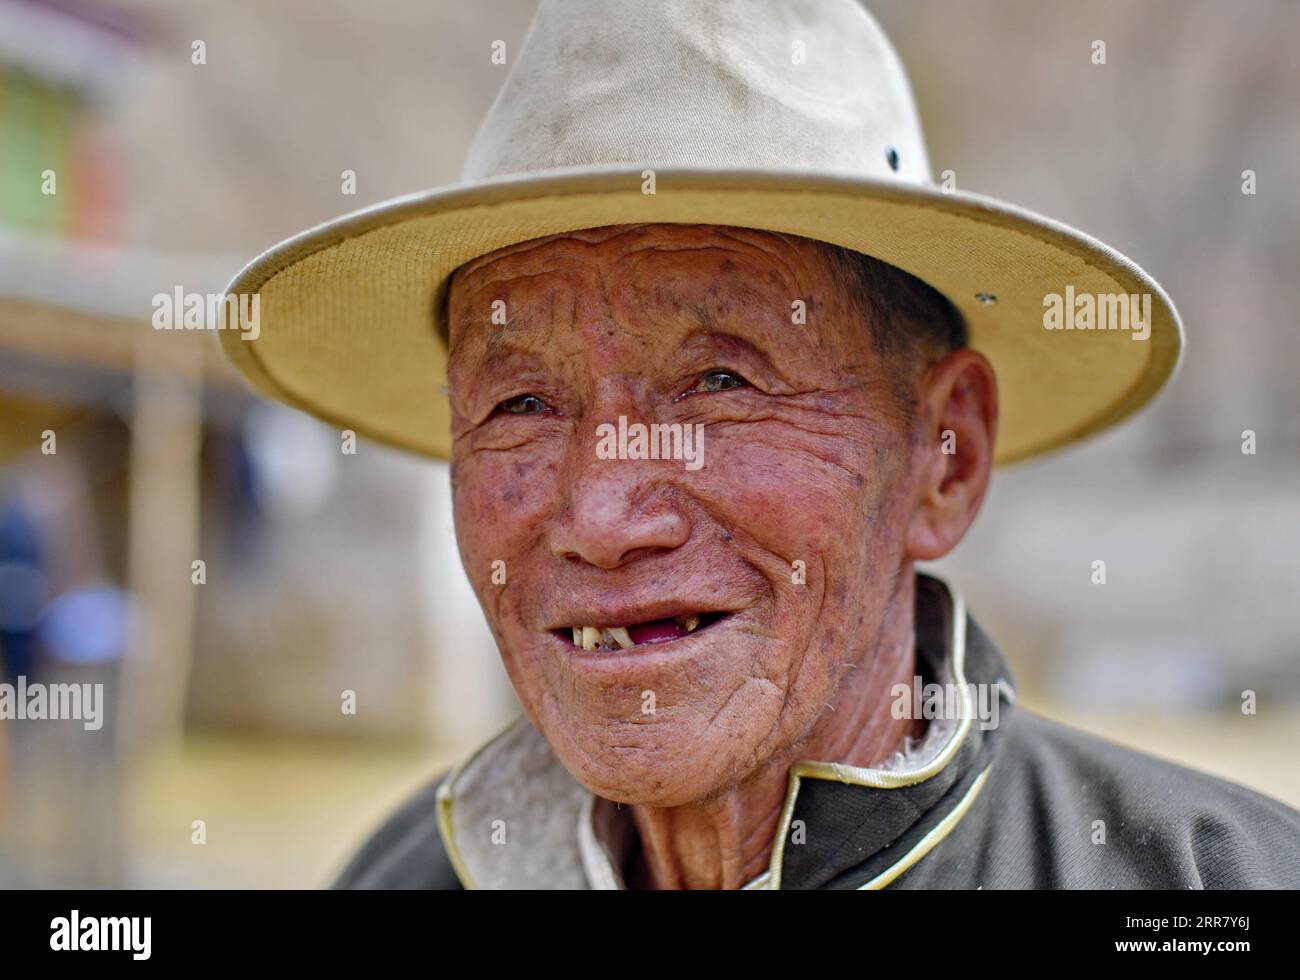 210408 -- LHASSA, 8 avril 2021 -- la photo prise le 20 mars 2021 montre le portrait de Dro Dra dans le Xigaze de la région autonome du Tibet du sud-ouest de la Chine. DRO Dra, un villageois de 85 ans à Xigaze, était autrefois serf dans le vieux Tibet. De retour à l'ancien temps, malgré le travail acharné toute l'année, la famille de Dro Dra ne pouvait pas avoir un grain d'orge des hautes terres qu'ils cultivaient pour eux-mêmes. Année après année, ils ont lutté dans un cercle vicieux consistant à emprunter de la nourriture, à payer des impôts au seigneur et à rendre de la nourriture. L'eau bouillante nécessite du bois de chauffage, mais chaque herbe et chaque arbre du manoir appartiennent au seigneur. Si nous étions trouvés cueilleurs Banque D'Images